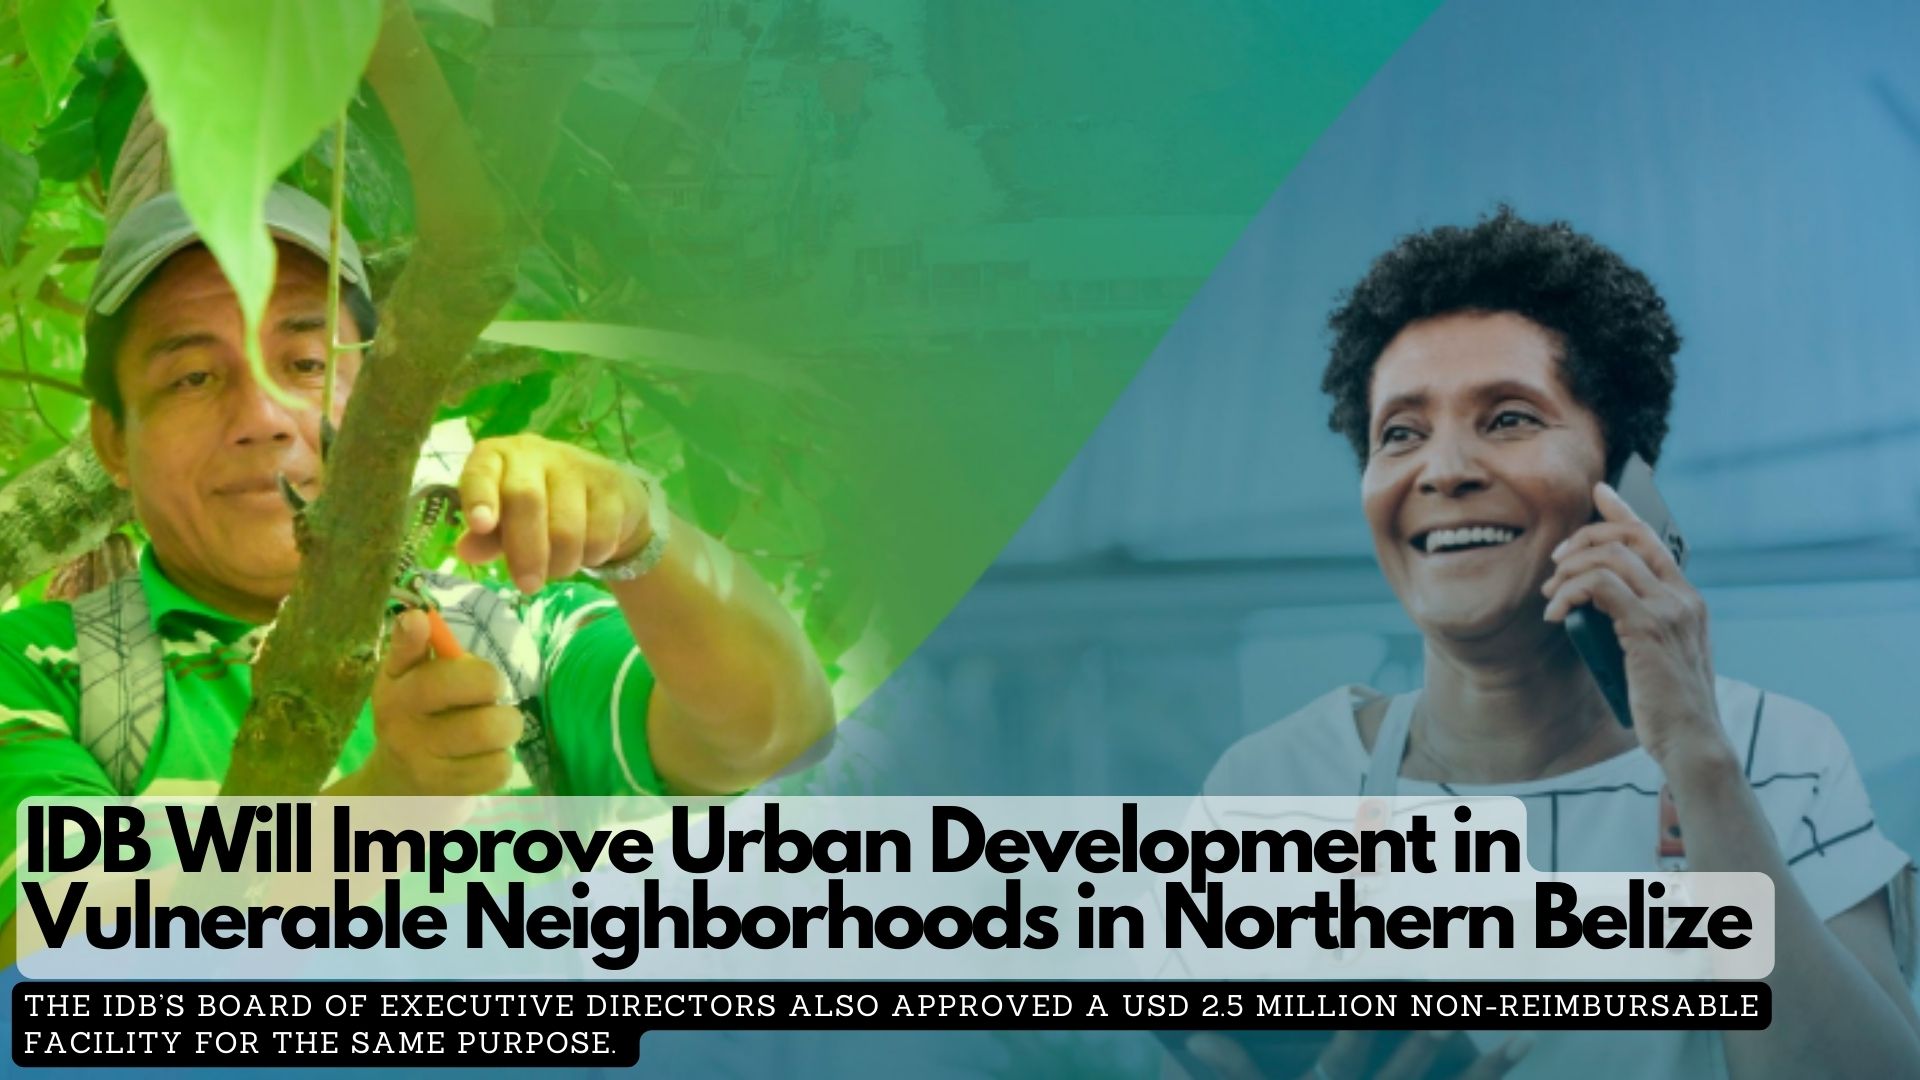 IDB Will Improve Urban Development in Vulnerable Neighborhoods in Northern Belize